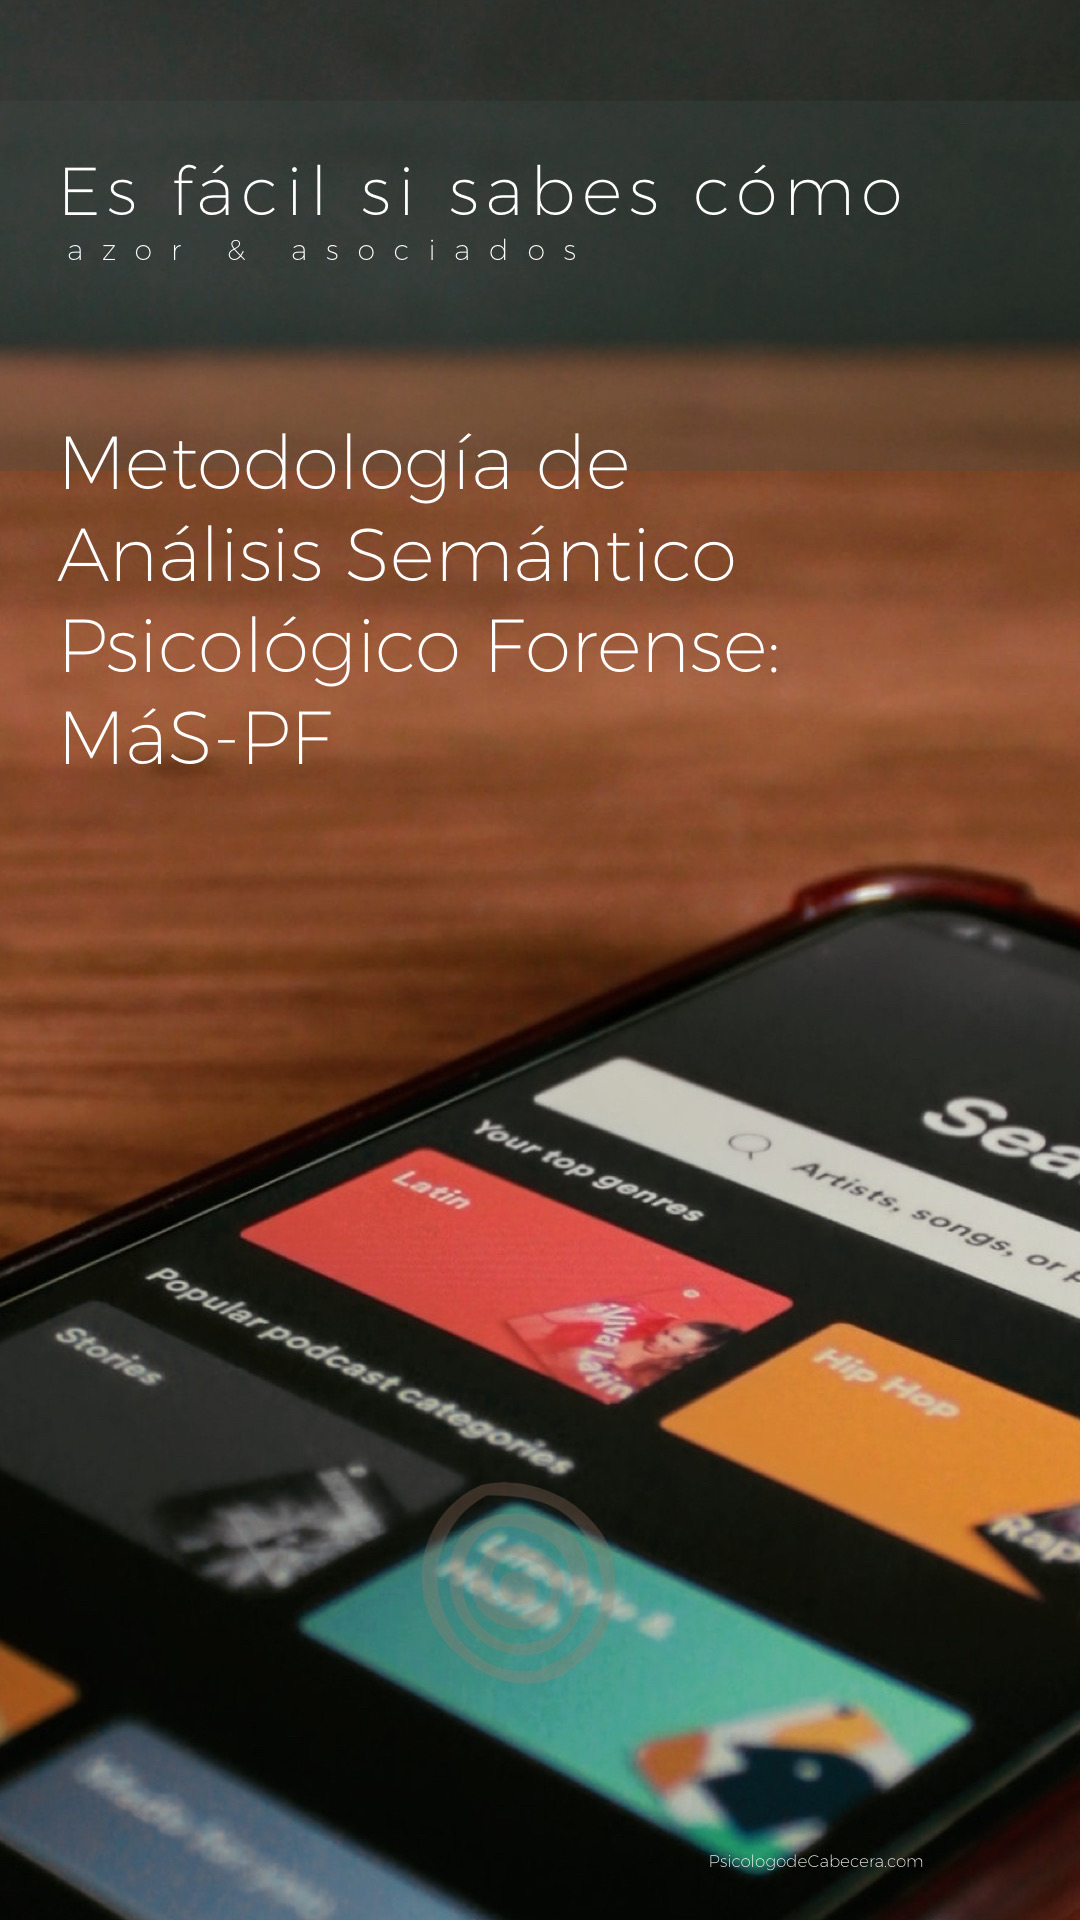 Metodología de análisis semático psicológico forense: MÁS-PF